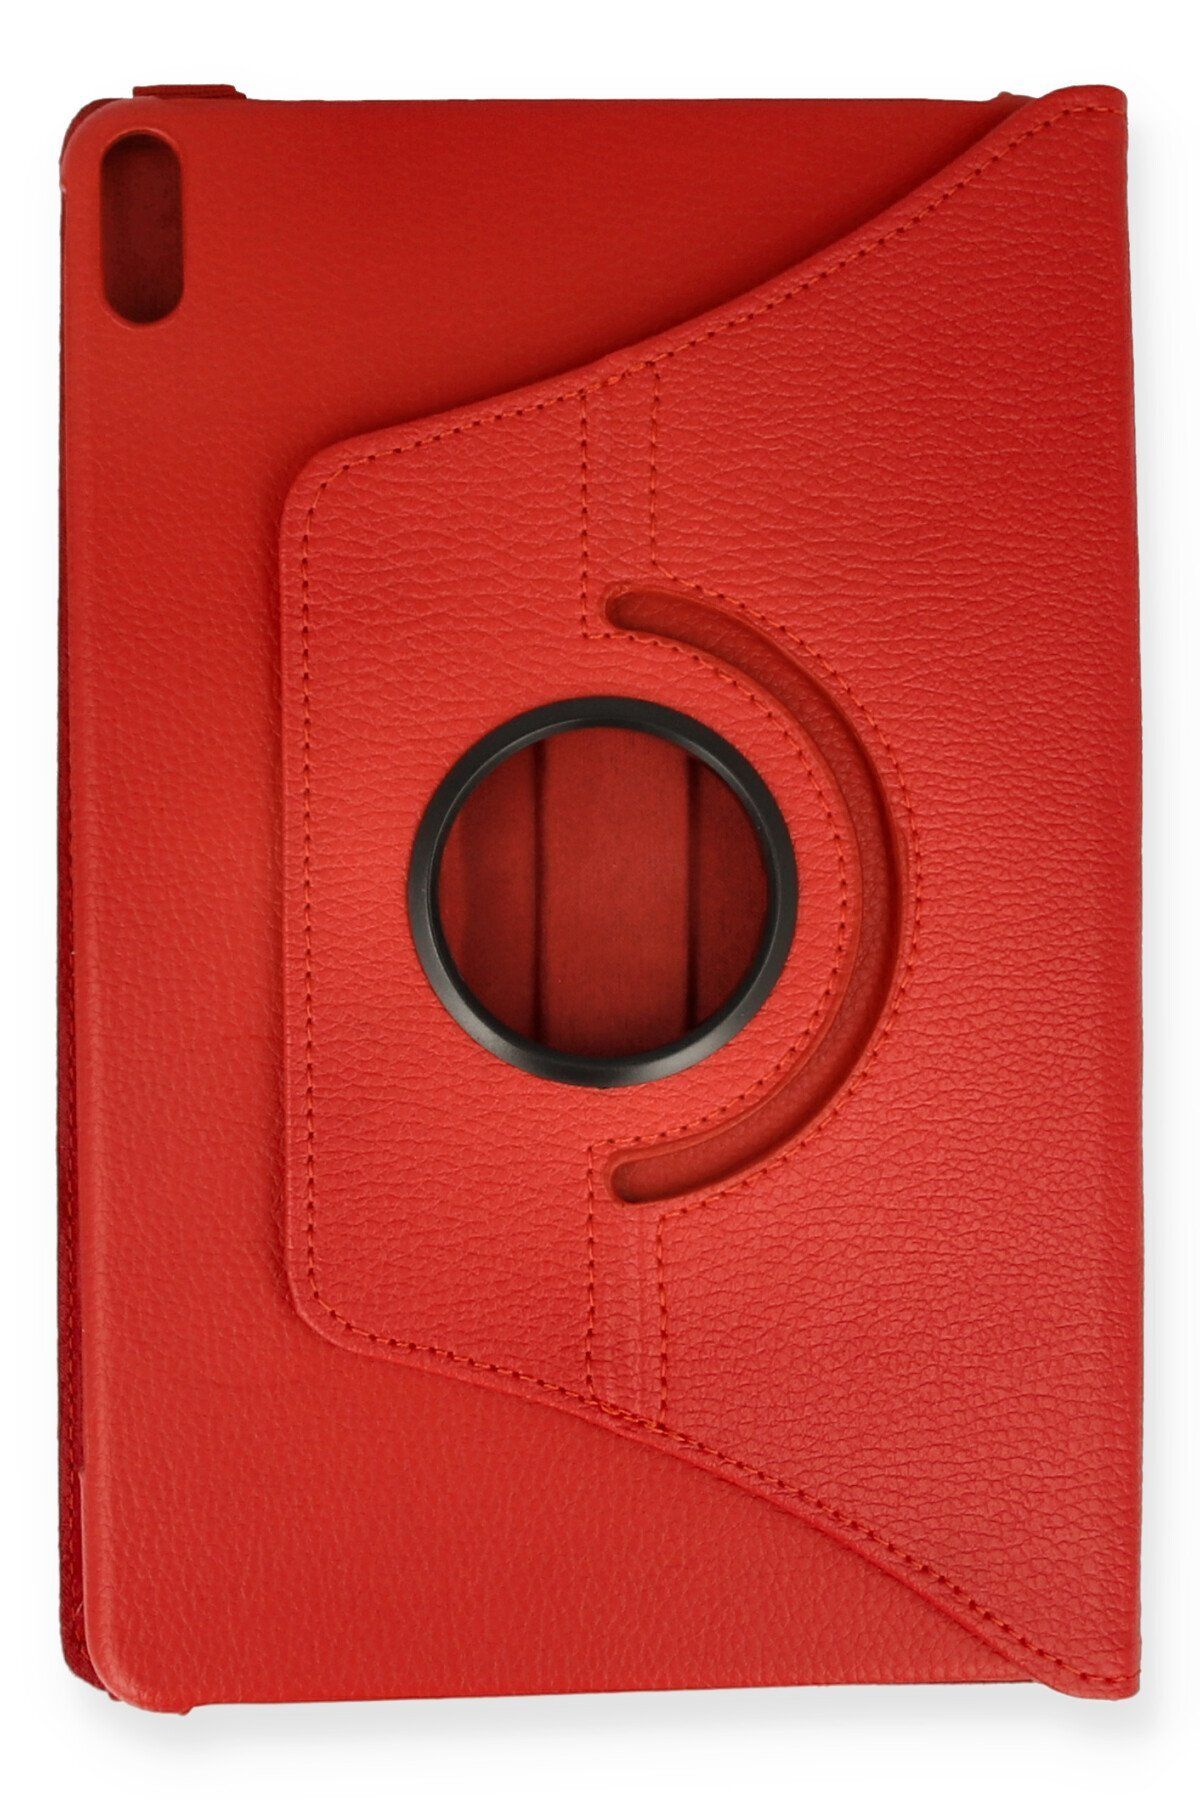 NewFace Huawei Honor Pad 8 Kılıf 360 Tablet Deri Kılıf - Kırmızı 374113